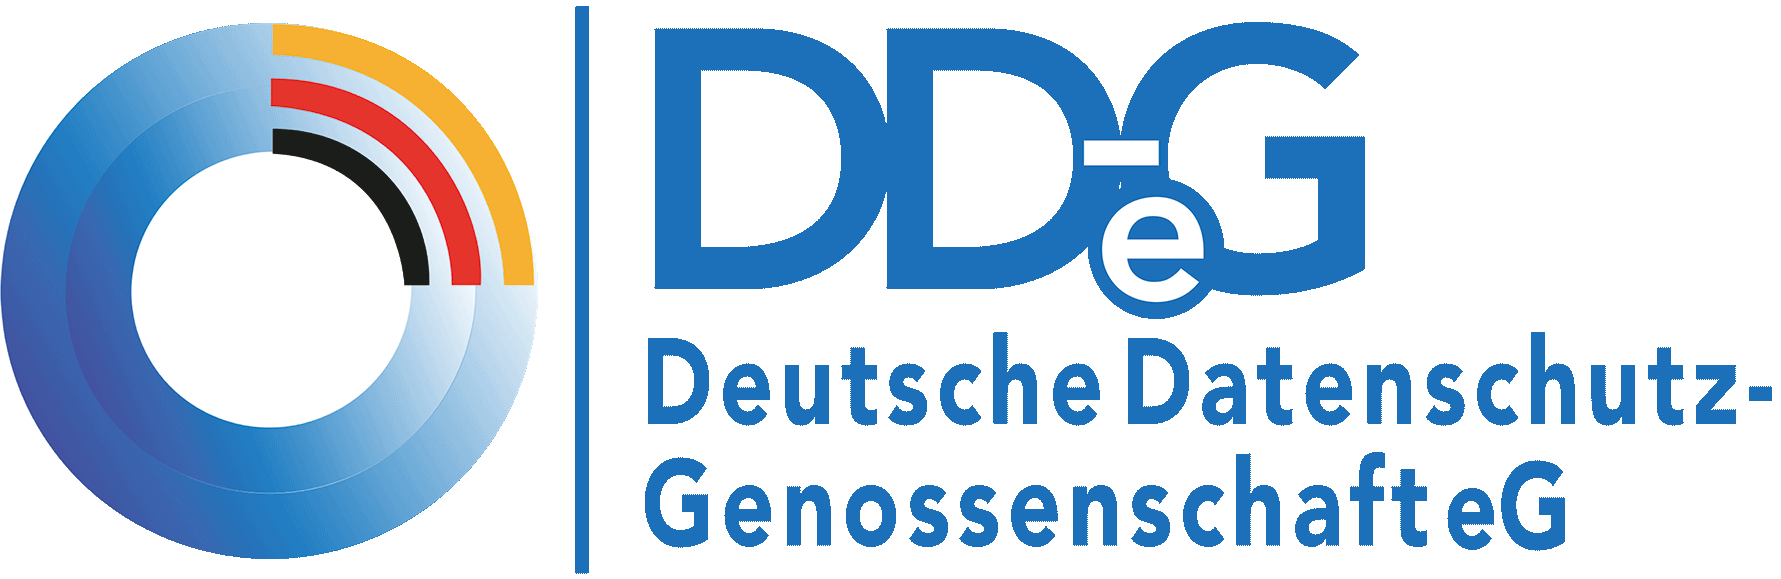 Deutsche Datenschutz-Genossenschaft